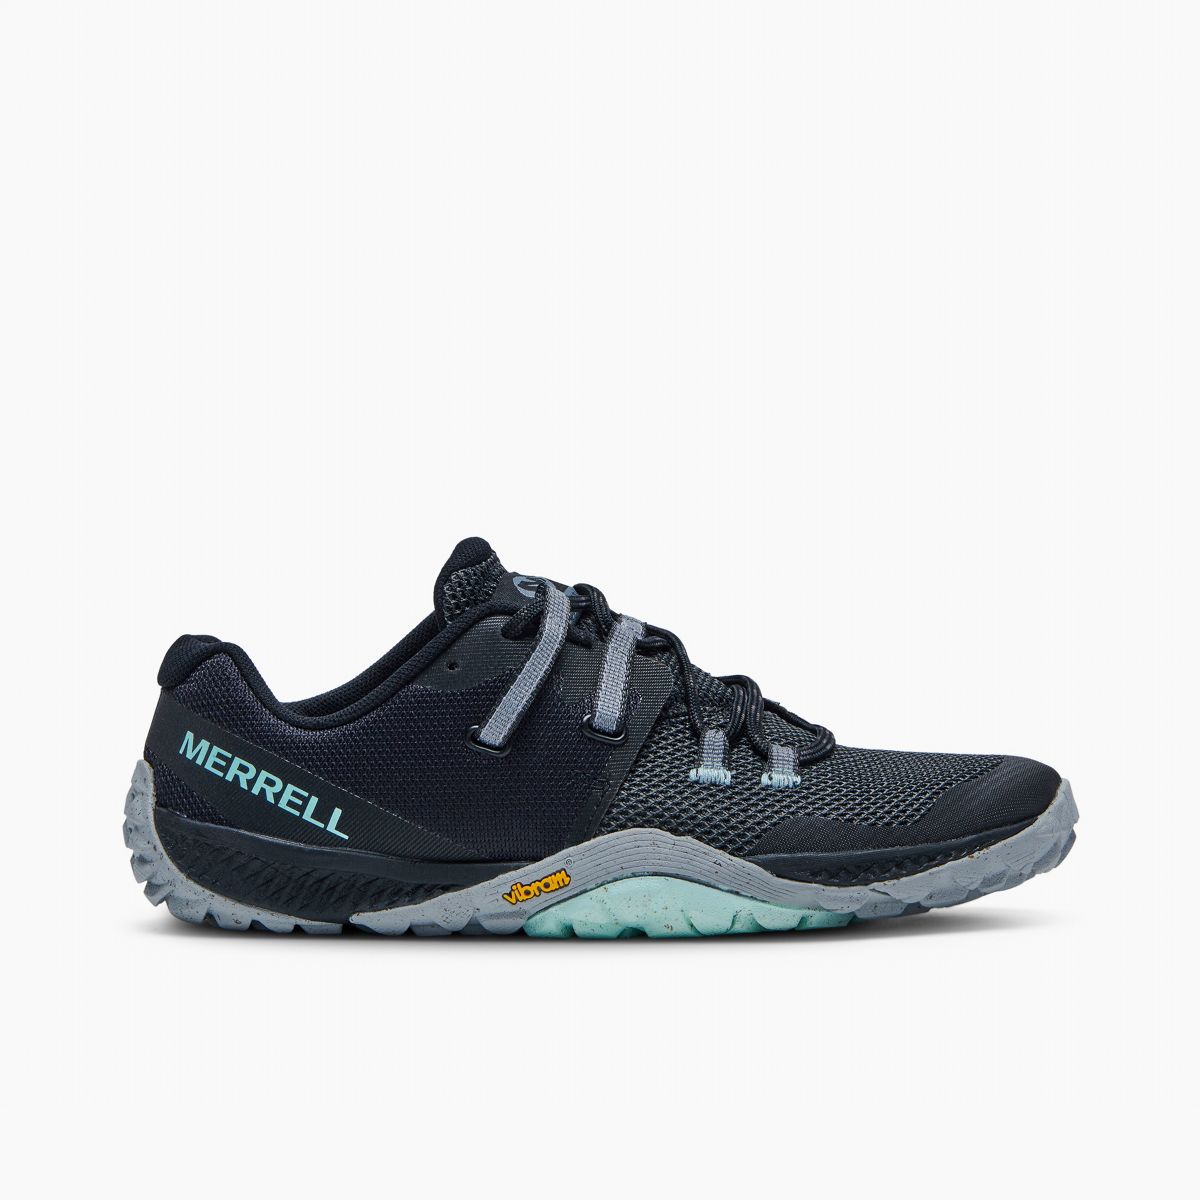 MERRELL Vapor Glove 6 Black Trail Running Shoes J067718